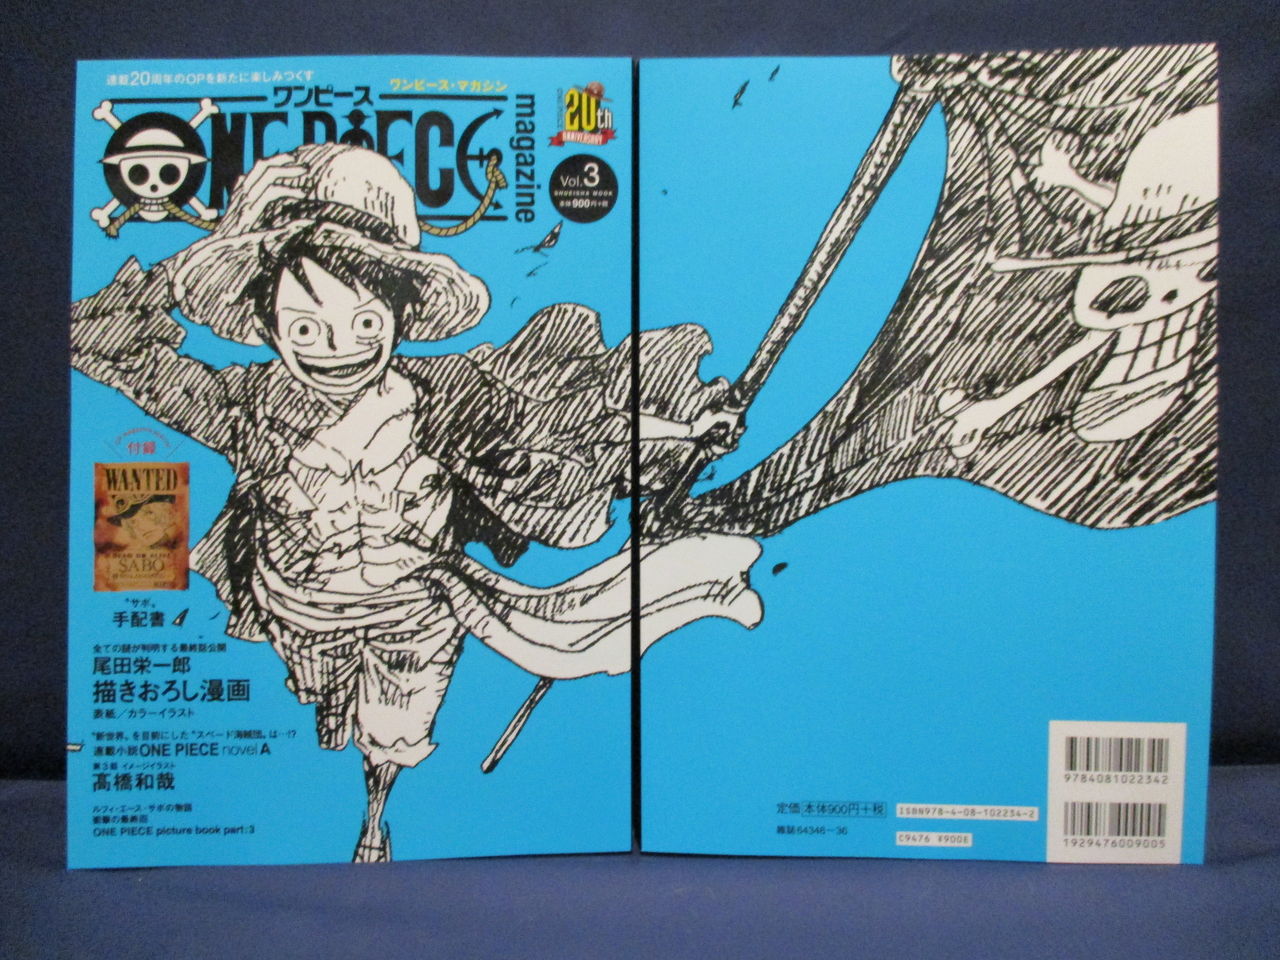 大阪店 新発売書籍のご案内 One Piece 麦わらストア 航海日誌